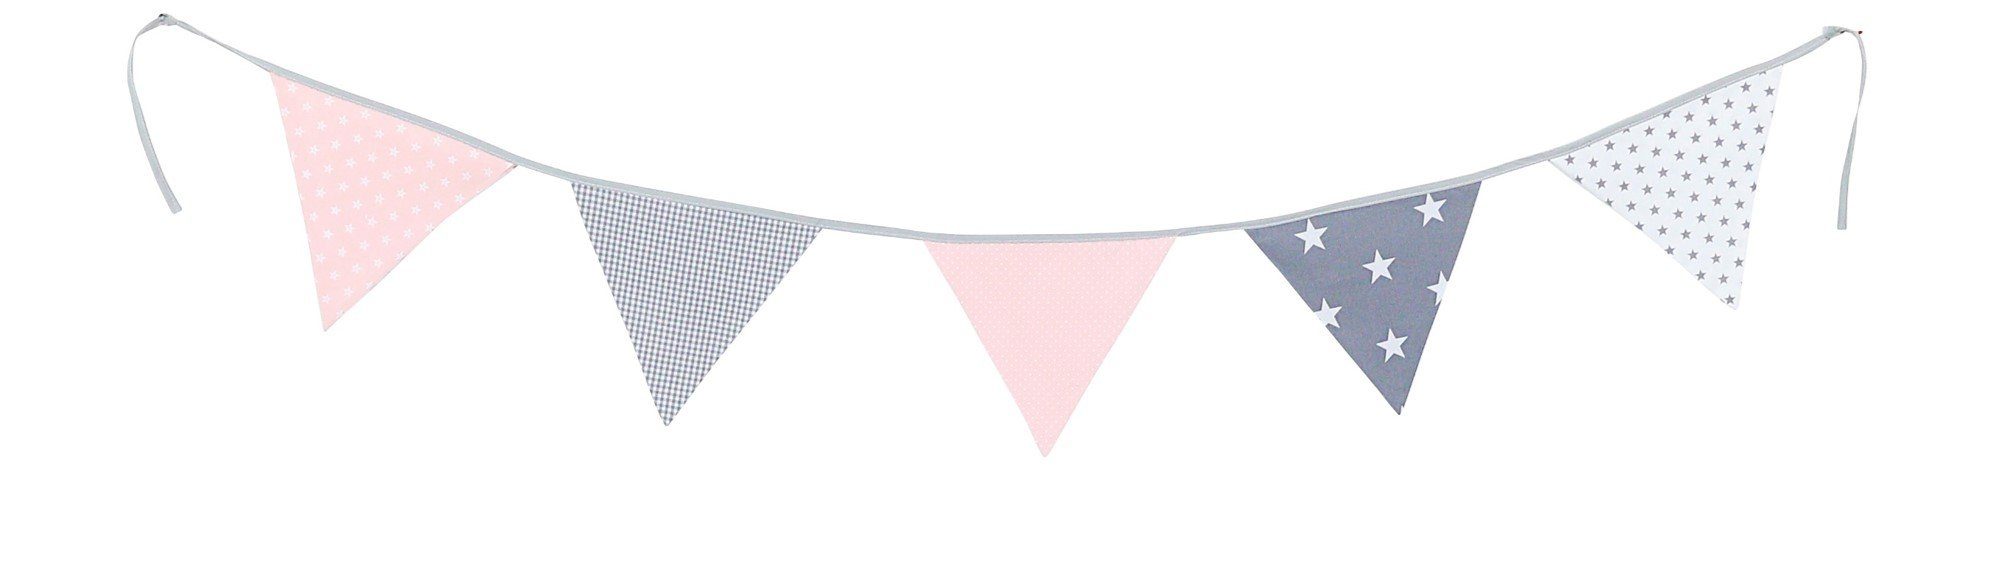 ULLENBOOM ® Wimpelkette Wimpelkette Rosa Grau 190 cm mit 5 Wimpeln (Made in EU), Deko-Girlande aus Stoff für das Kinderzimmer, 100% Baumwolle | Partydekoration